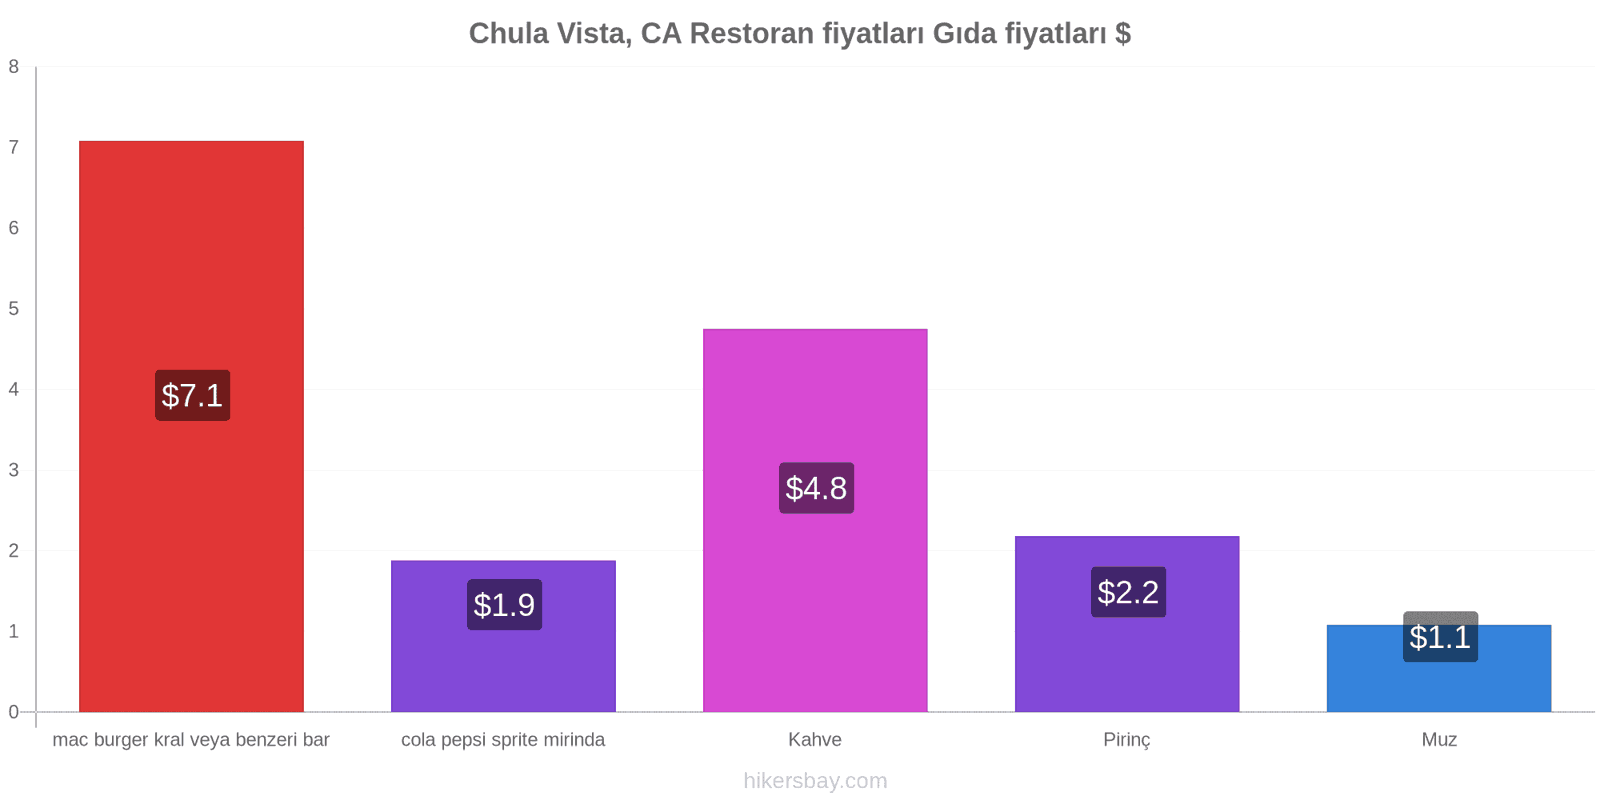 Chula Vista, CA fiyat değişiklikleri hikersbay.com